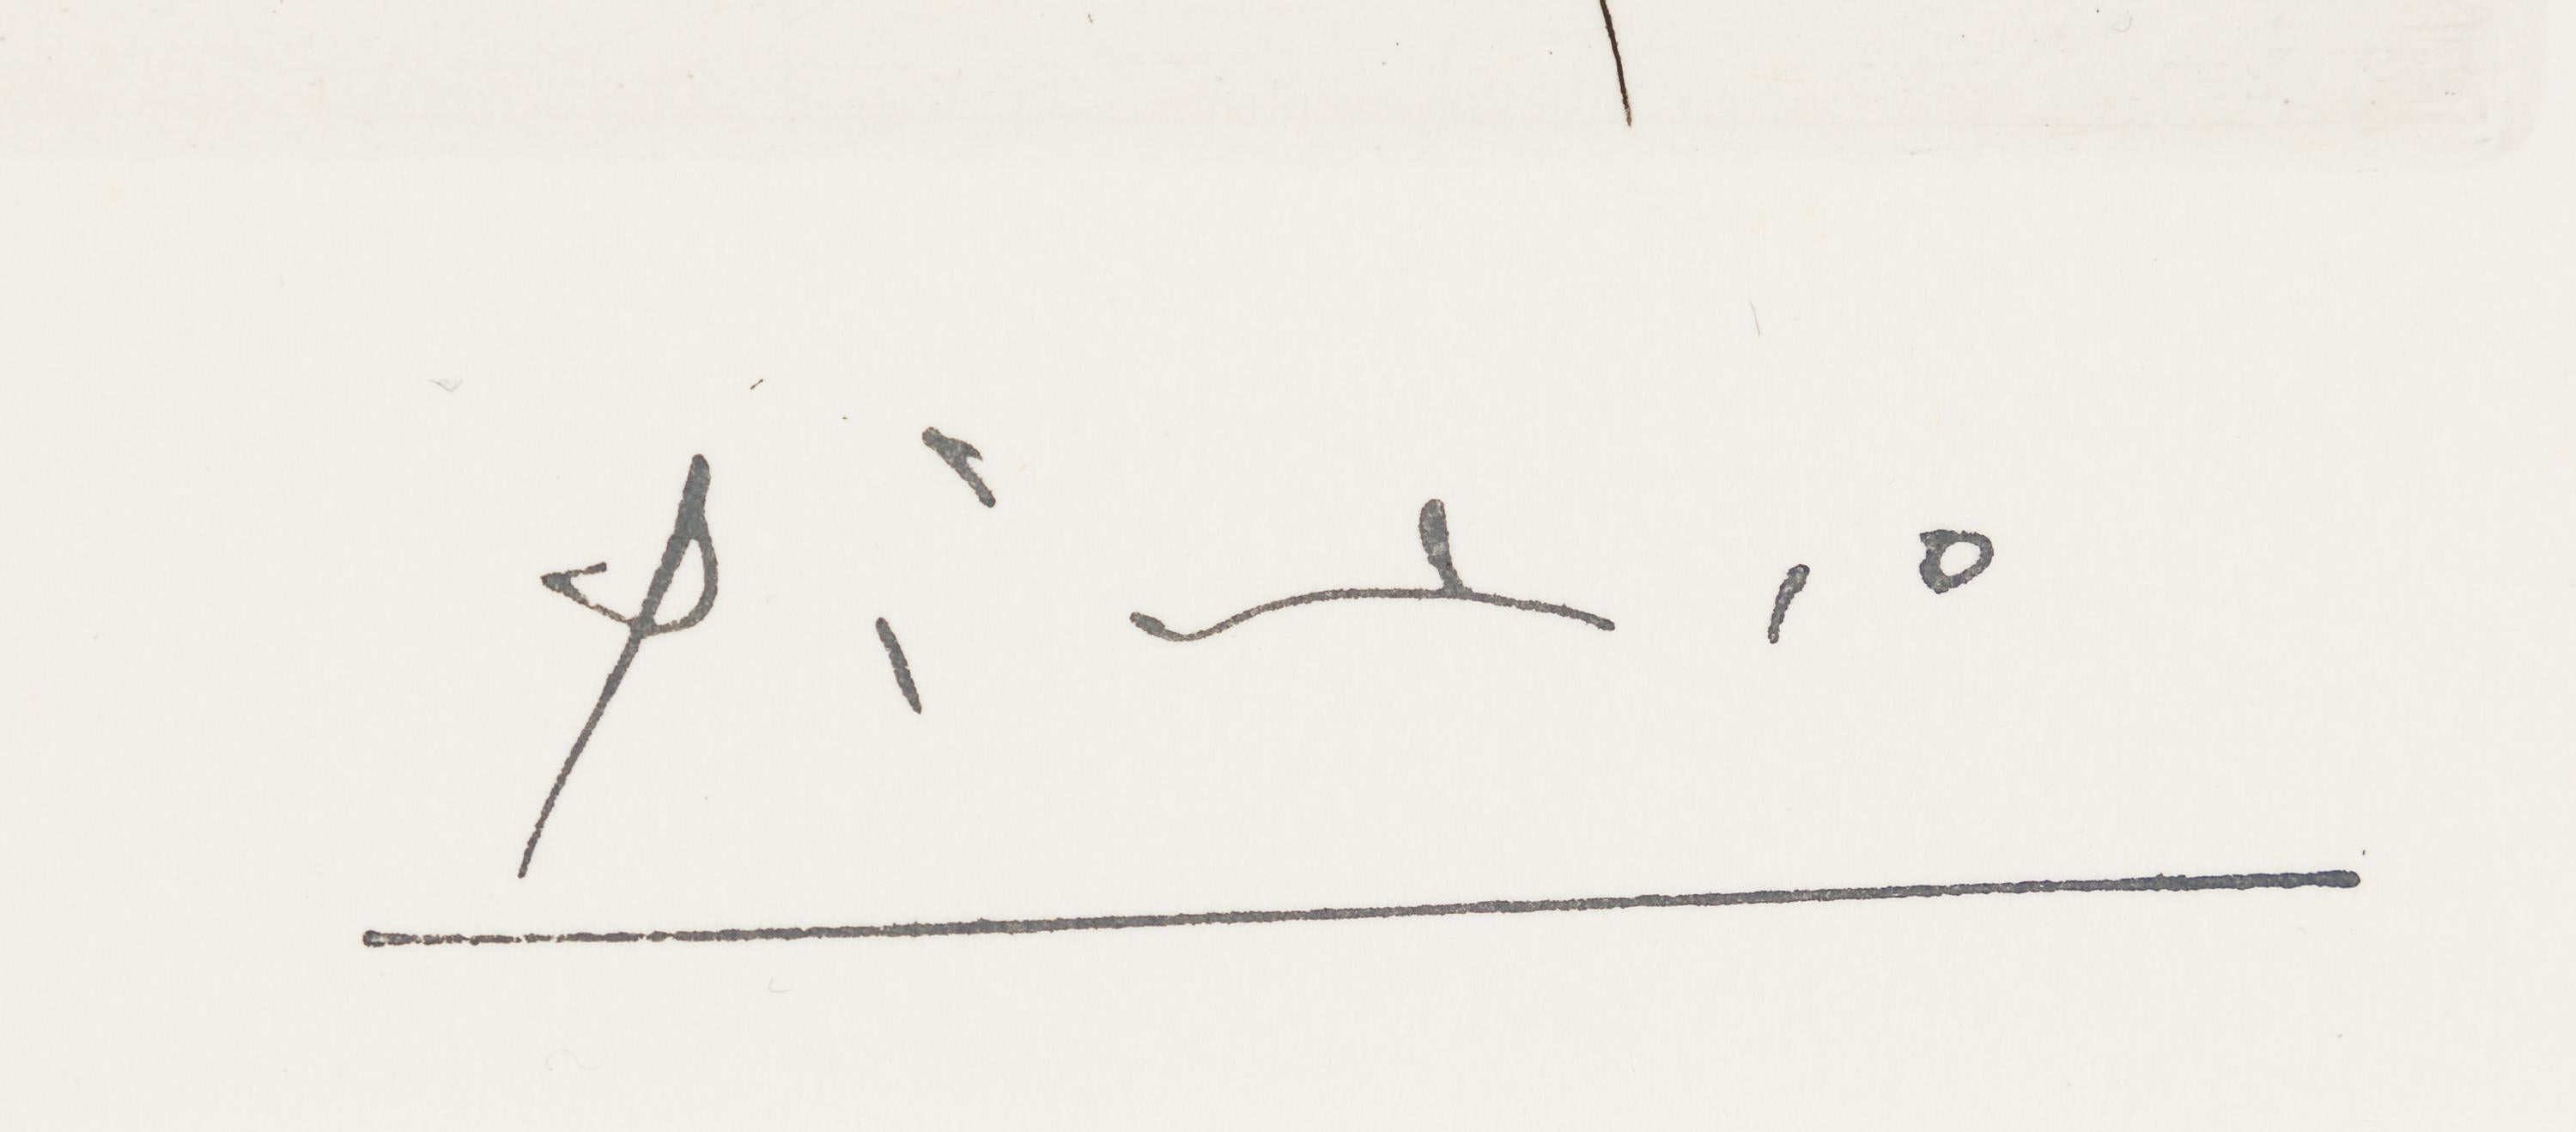 - signé en bas à droite
- numéroté 15/50 
- daté dans la plaque du 29.3.71
- de la Suite 156
- publié par la Galerie Louise Leiris, Paris, 1978
- cat.raisonné Bloch 1964
- cat.raisonné Baer 1973